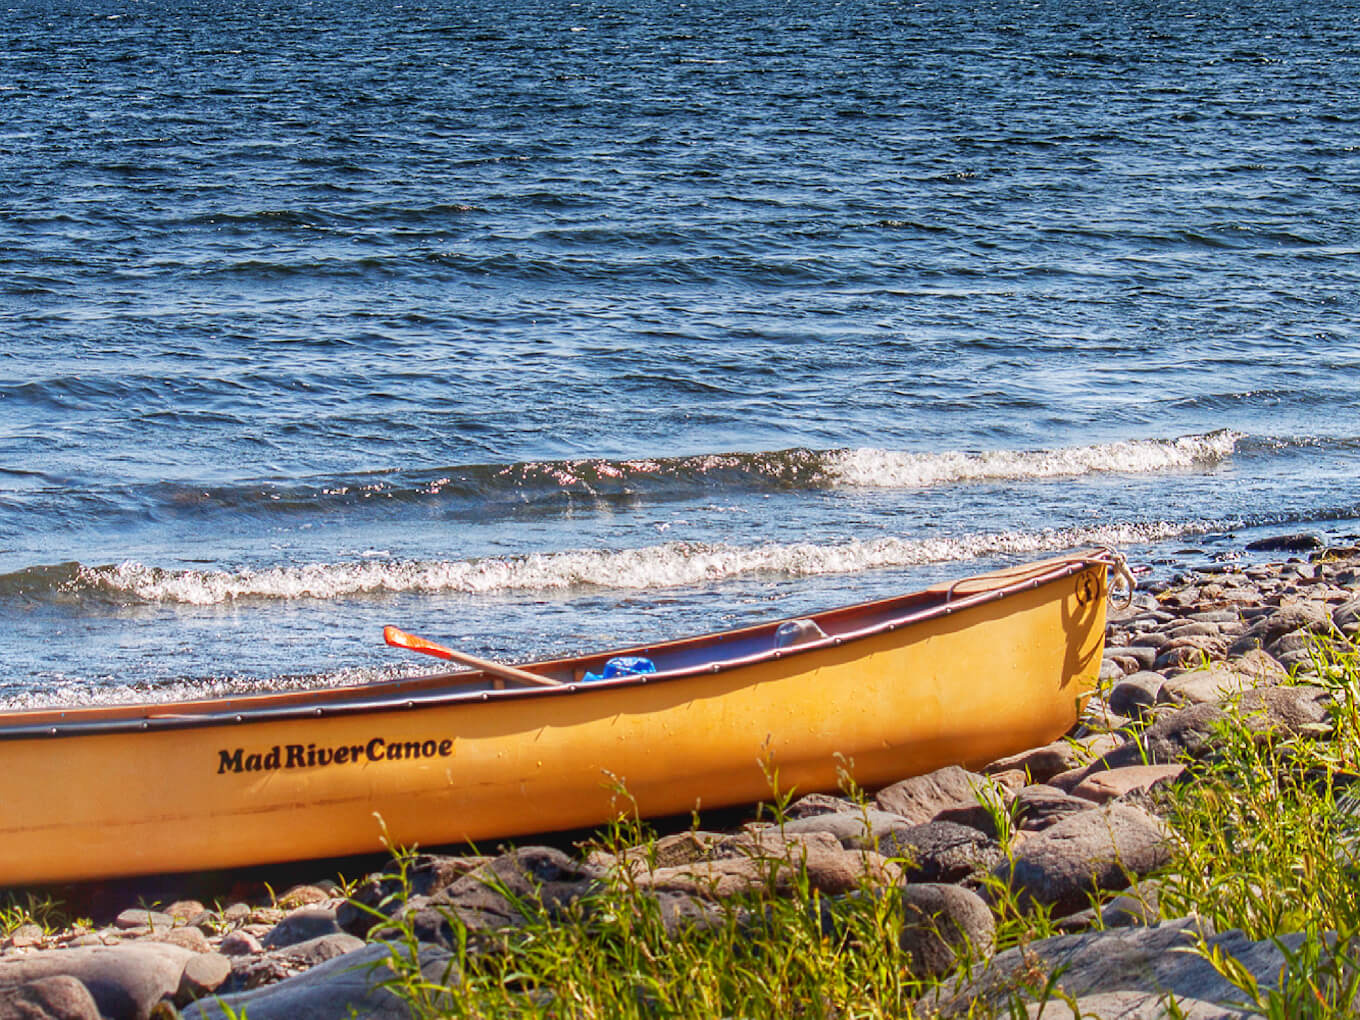 Una canoa amarilla en la orilla de un lago azul demuestra el contraste de color en la fotografía.